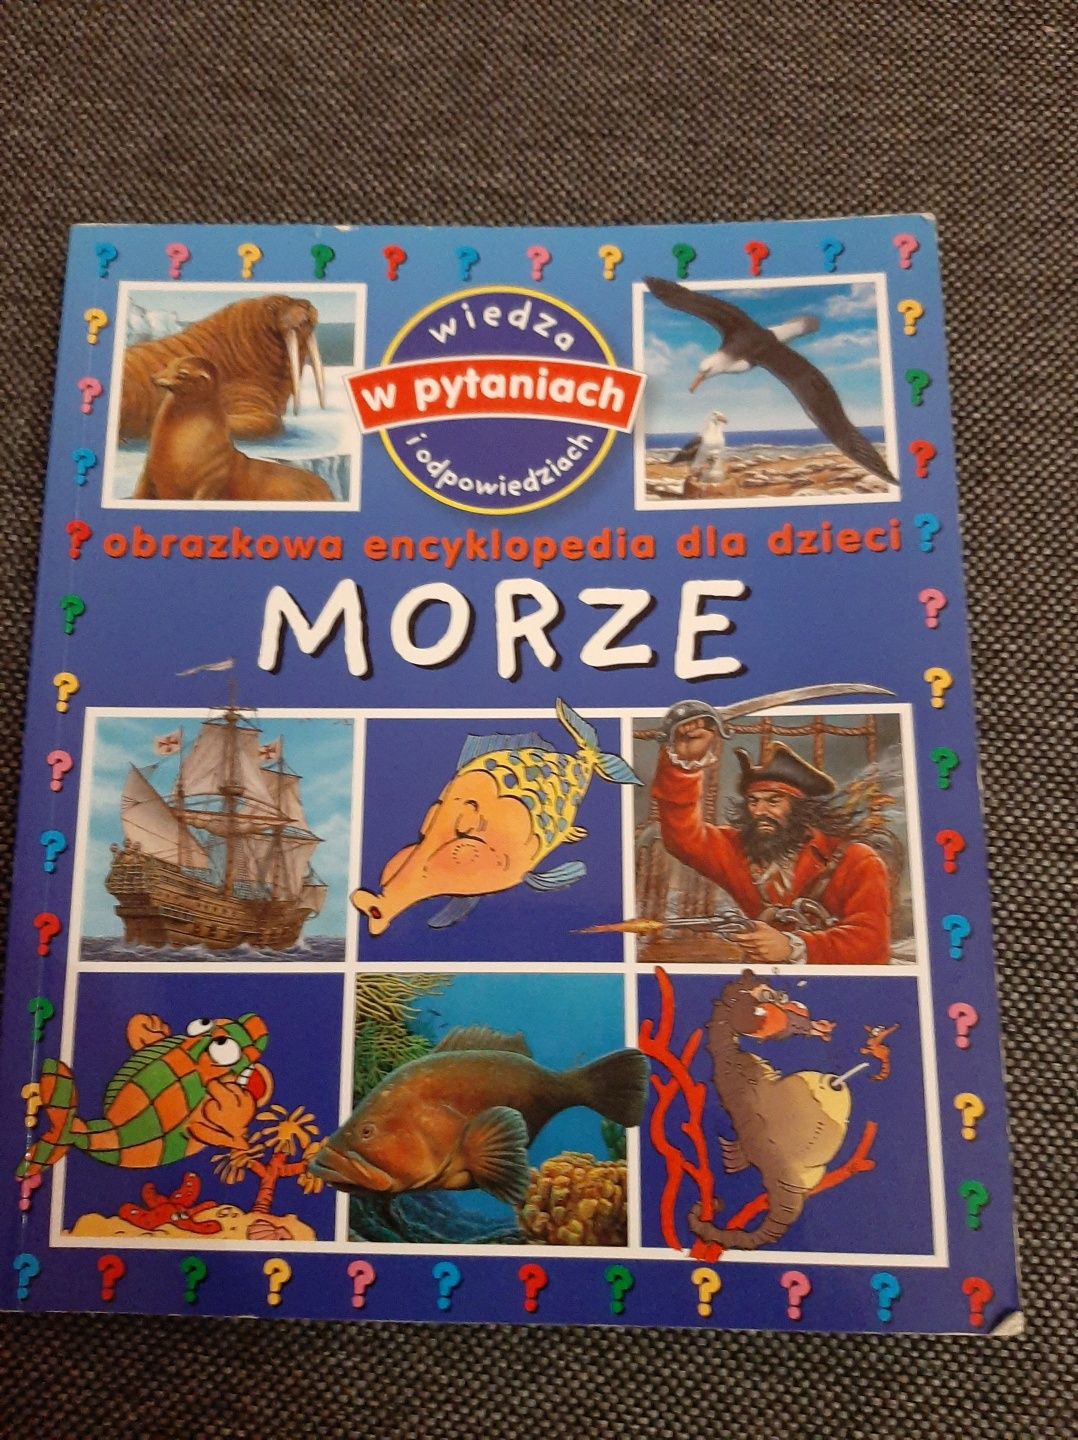 Morze obrazkowa encyklopedia dla dzieci